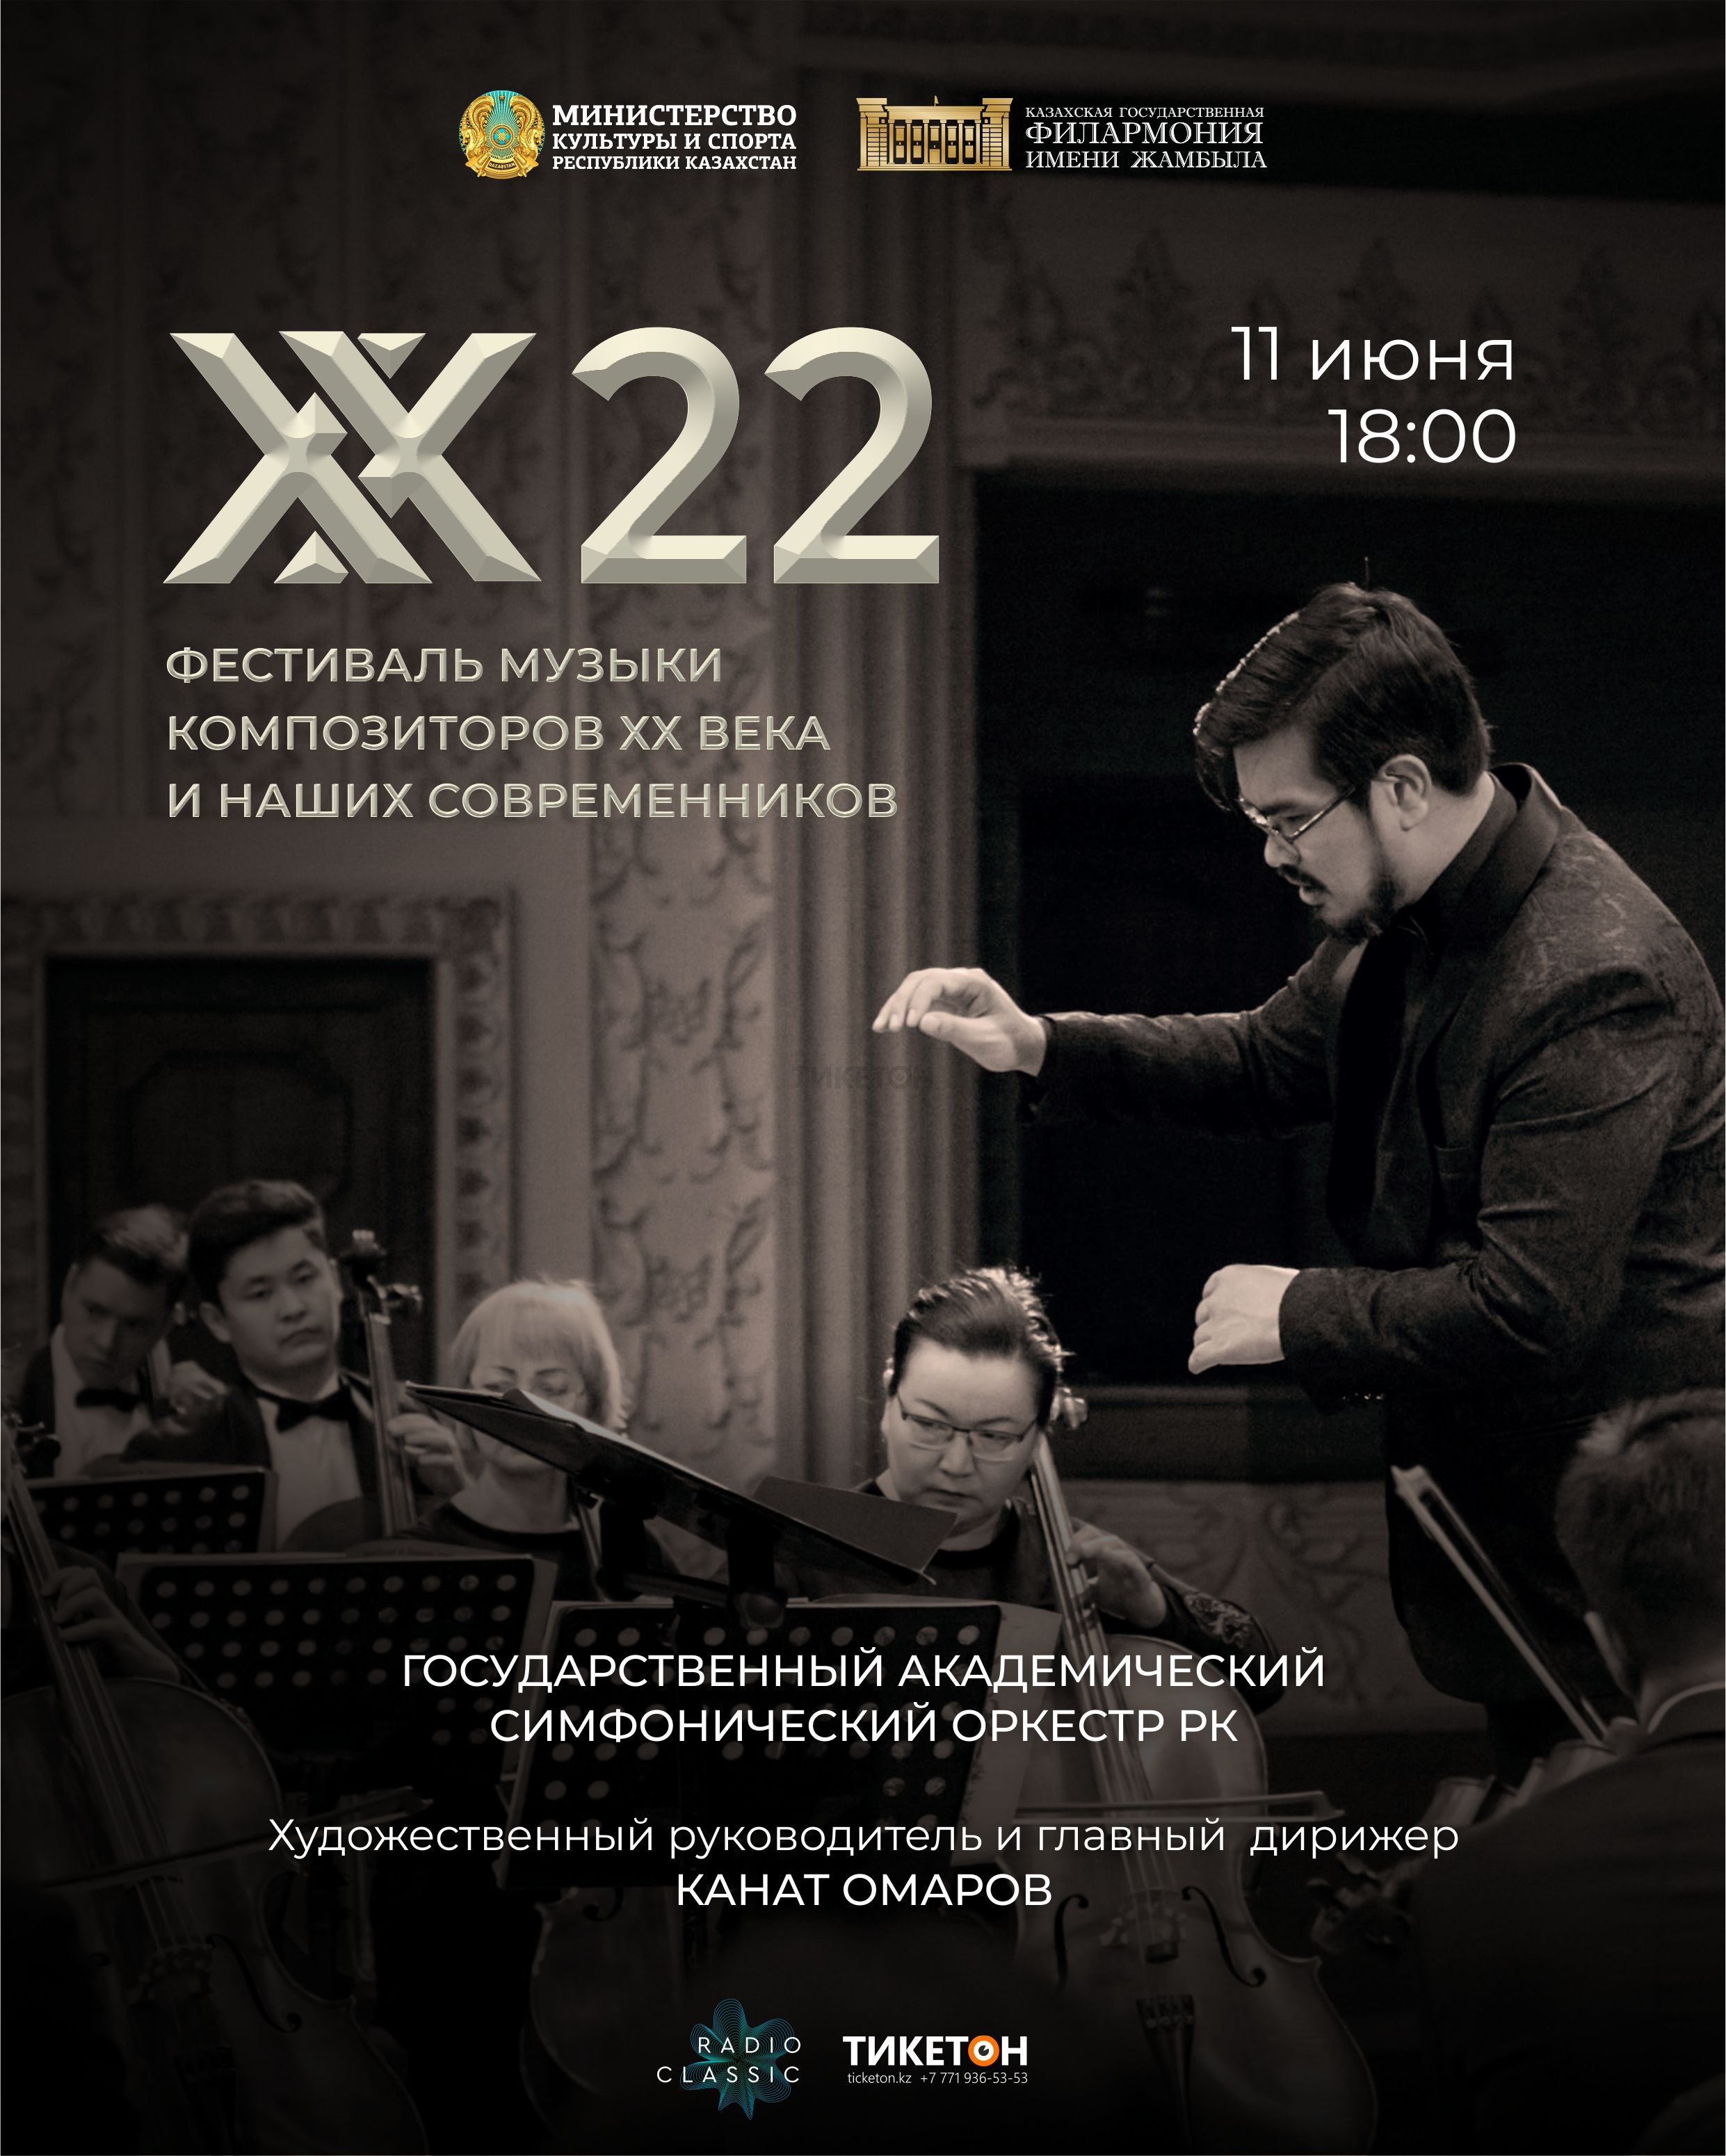 «ХХ22» фестиваль музыки композиторов ХХ века и наших современников